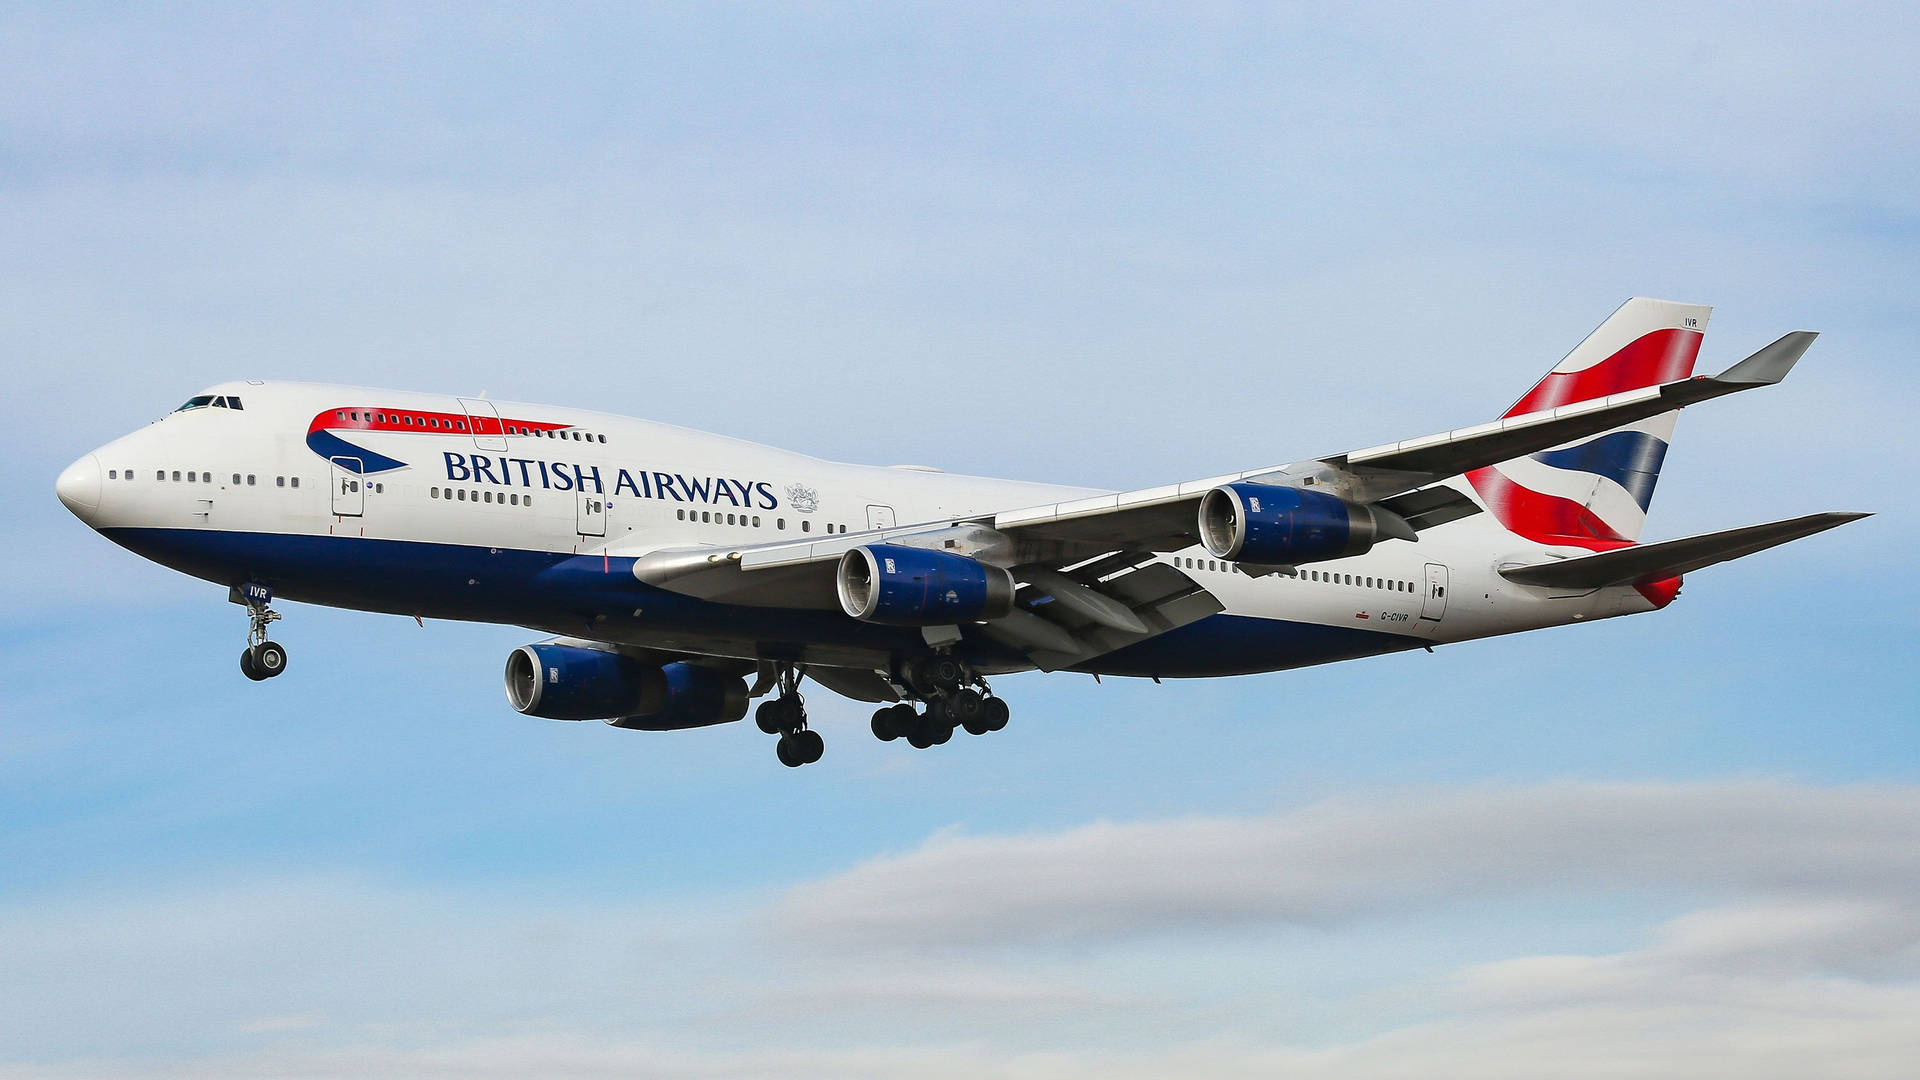 Brittiskaairways Boeing 747-subsonisk Flygning. Wallpaper